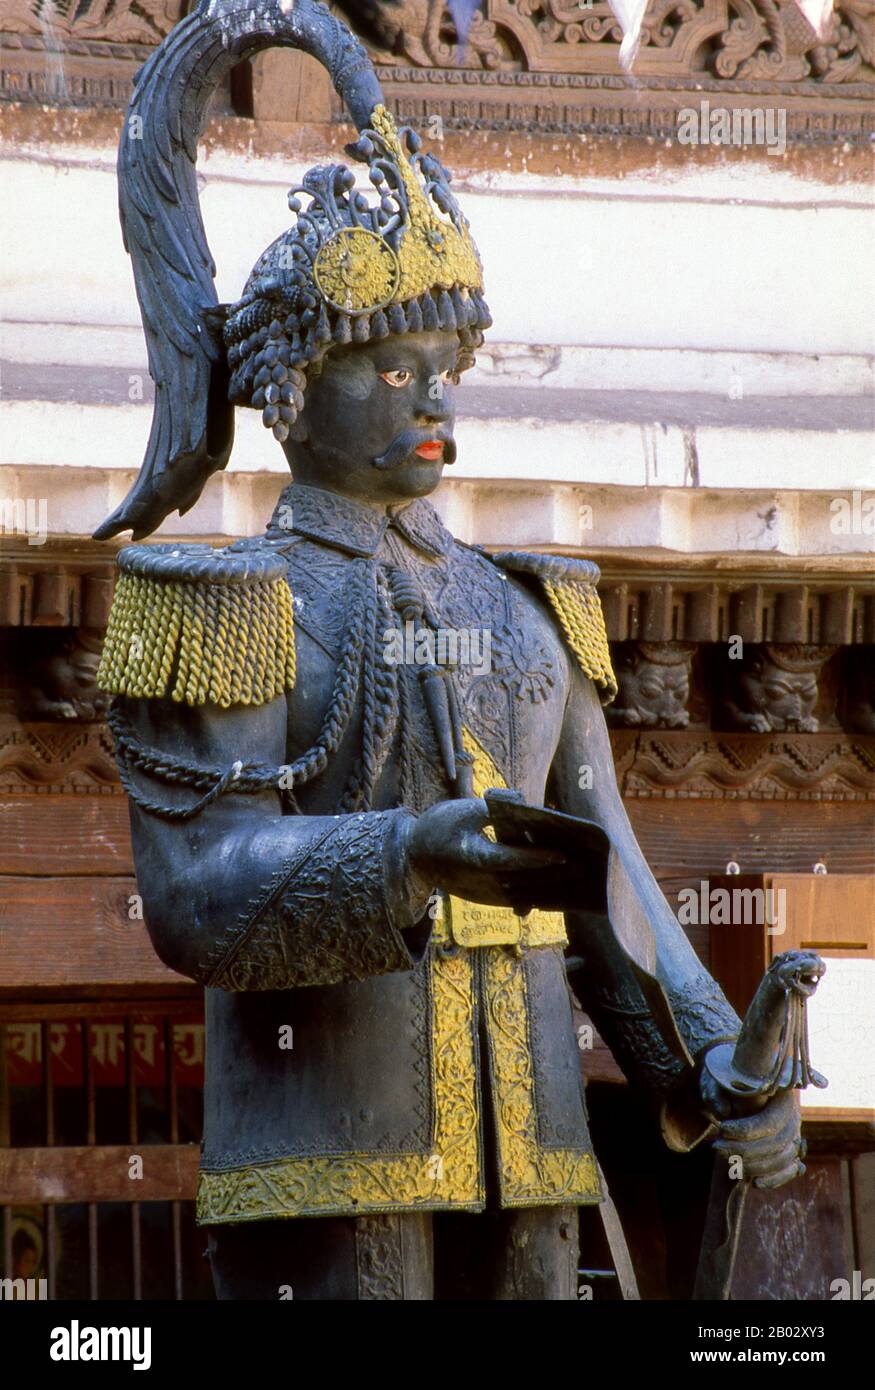 Rudravarna Mahavihara, oder Oku Bahal, wurde Mitte des 17. Jahrhunderts erbaut. Der Tempel befindet sich um einen Innenhof, der mit Chaitya- und Metallfiguren aller Art und Größen überströmt ist. Es gibt massive Garudas, Elefanten, Pfauen, Figuren betender Anbeter und eine Statue von Juddha Shamsher Rana, die dem Tempel nach dem Erdbeben von 1934 großzügige Wiederherstellungshilfen gewährt haben. Judha Shumsher jung Bahadur Rana (Narayanhity Palace, Kathmandu, 19. April 1875 - Dehradun, Indien, 20. November 1952) war vom 1. September 1932 bis 29. November 1945 Premierminister von Nepal als Chef der Rana Dynas Stockfoto